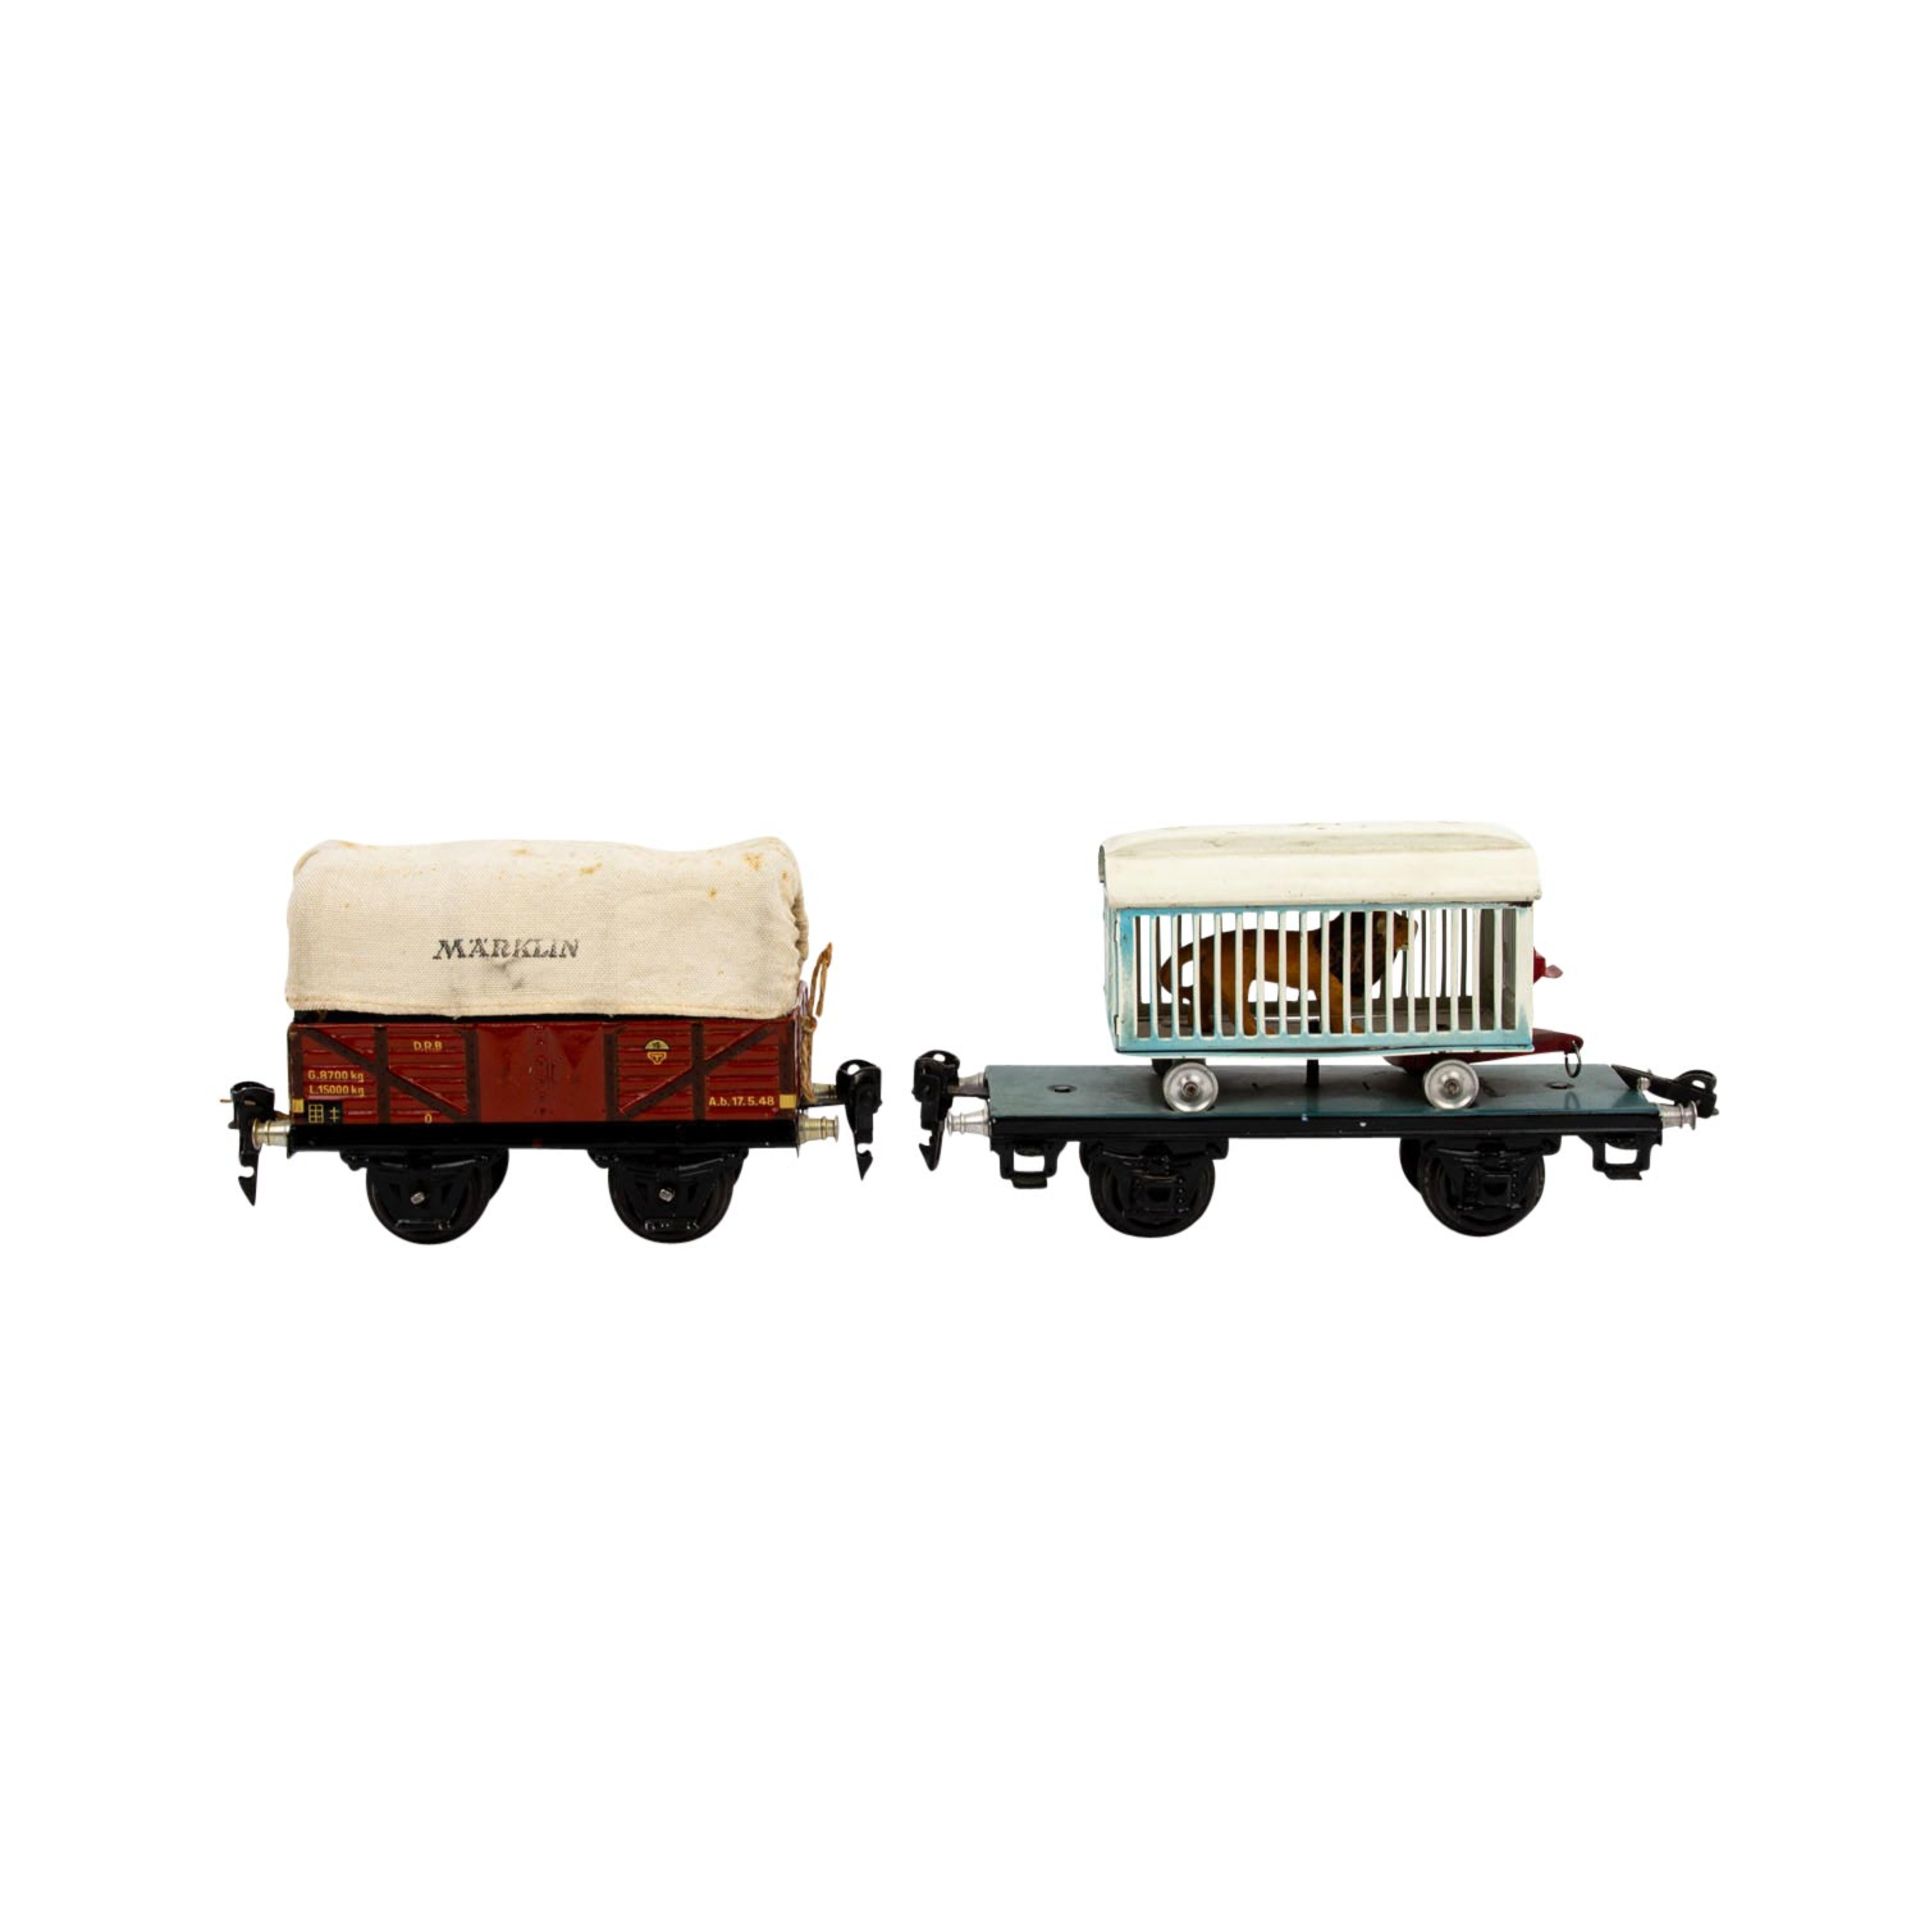 MÄRKLIN zwei Güterwagen, Spur 0, 1930er Jahre, bestehend aus Plattformwagen blau/sch - Bild 5 aus 7